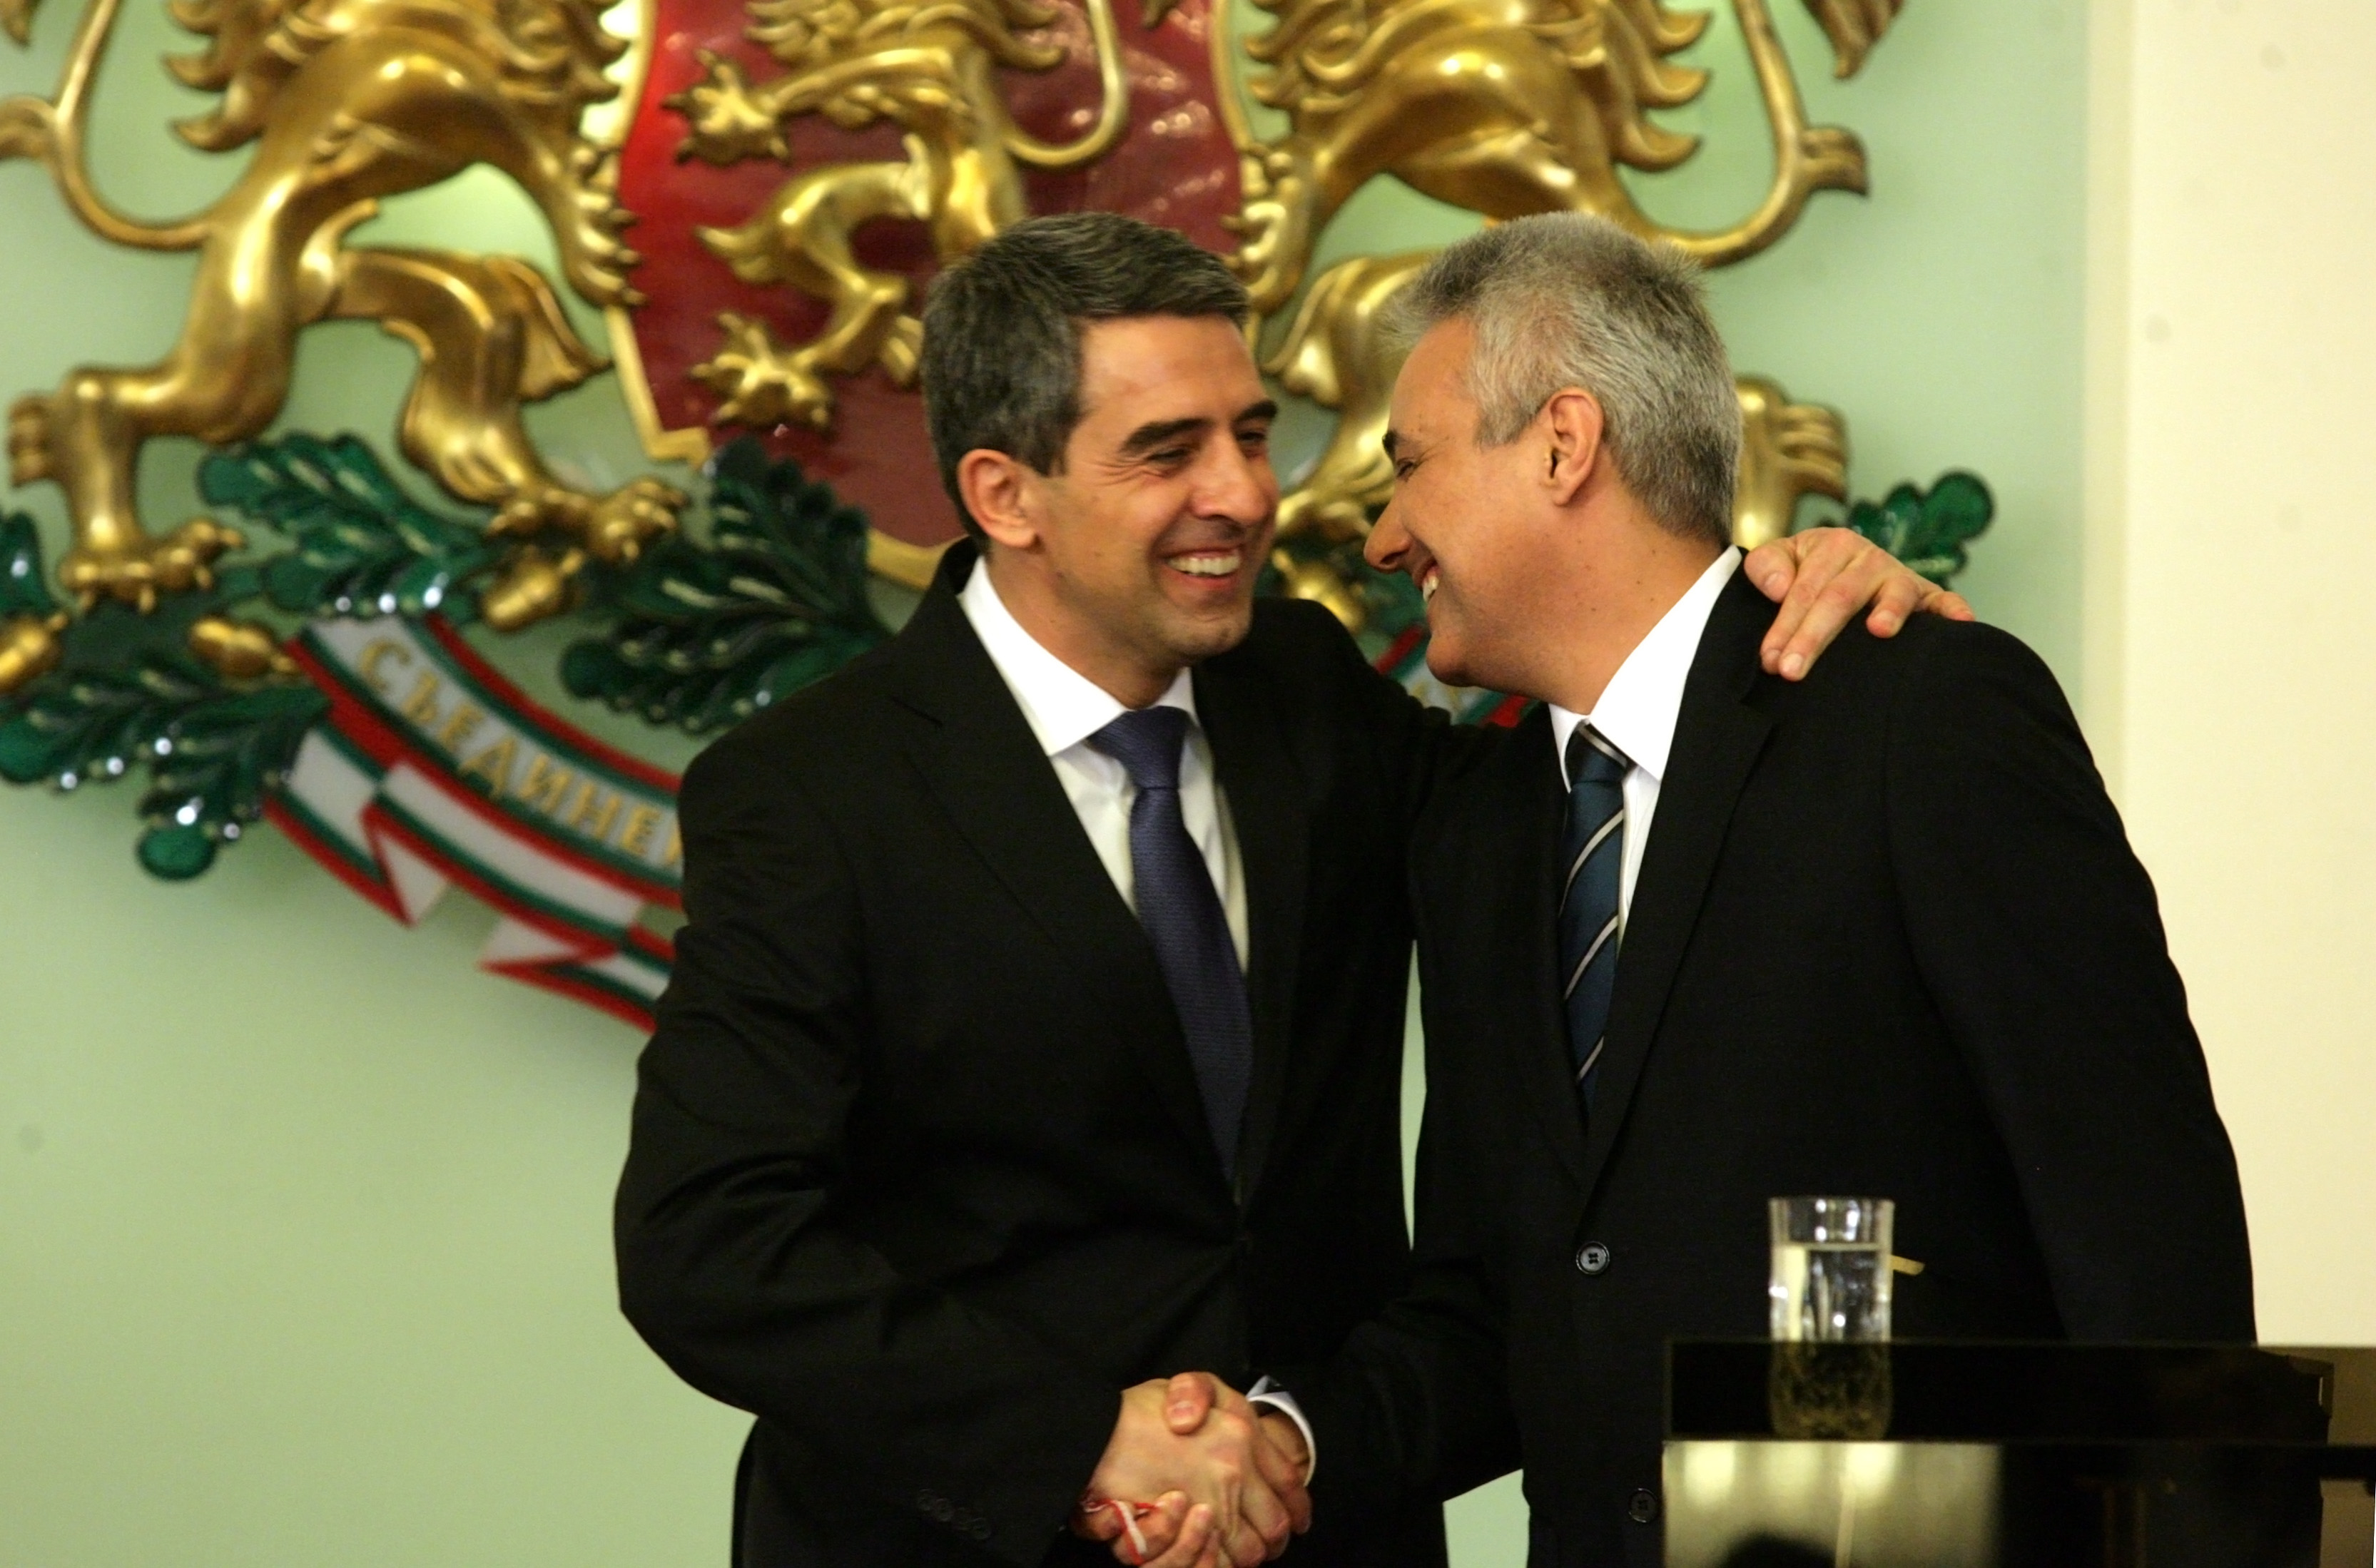 На България сега й е нужен дипломат, каза Росен Плевнелиев и назначи посланик Марин Райков за премиер